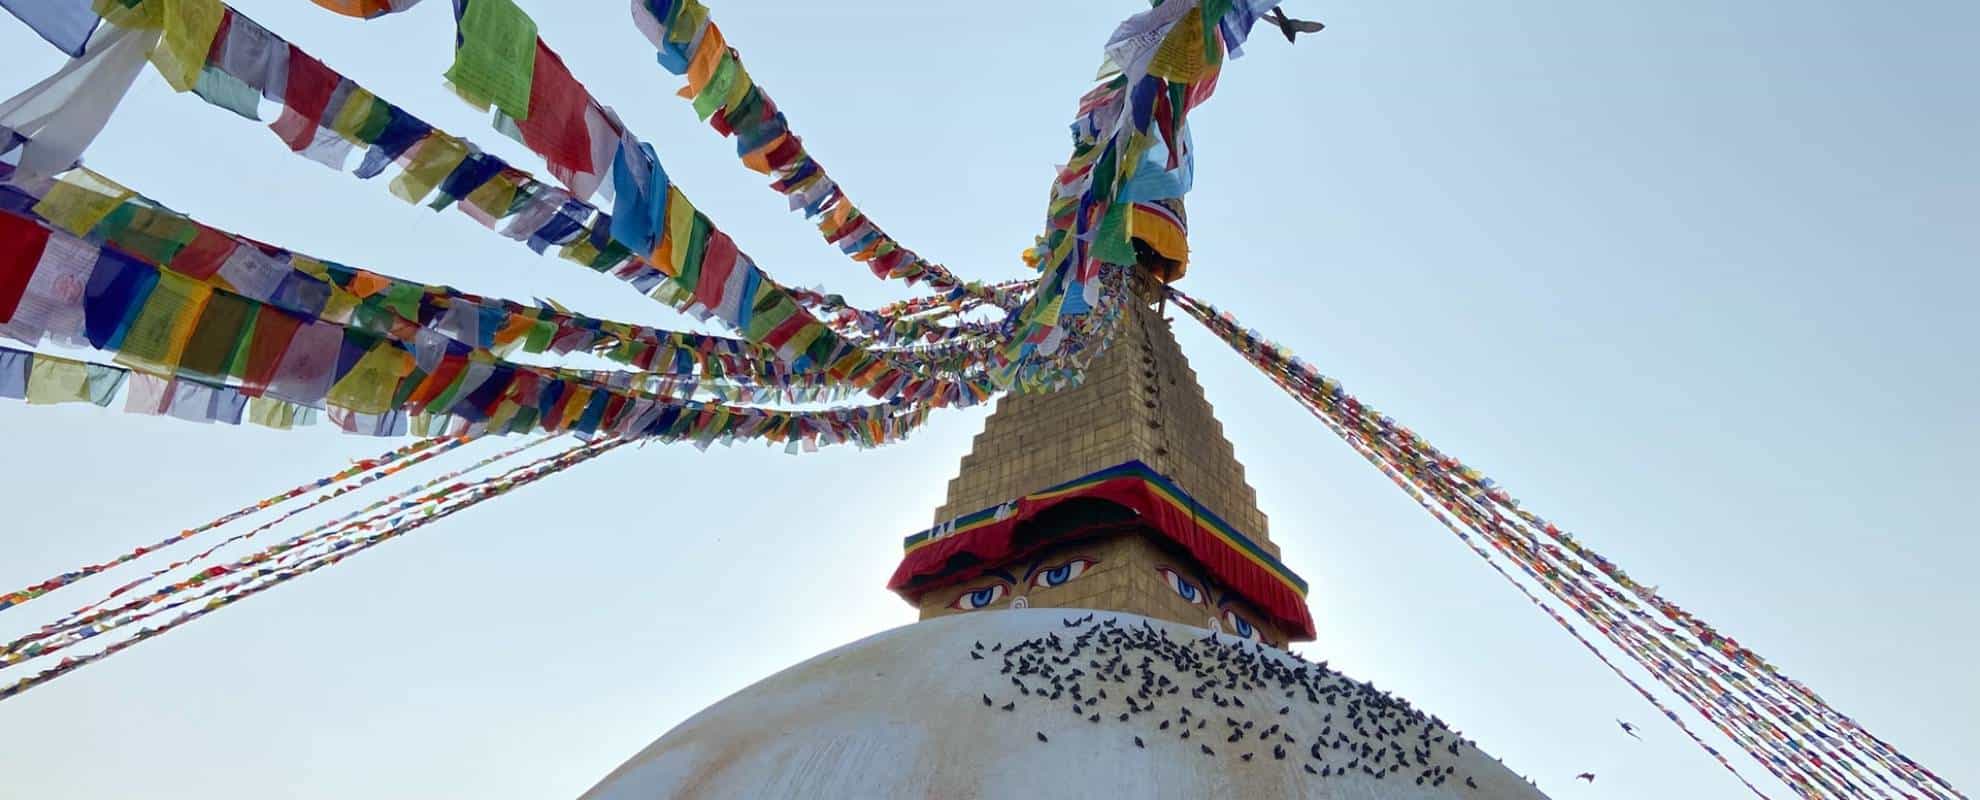 10 Best Things To Do In Kathmandu Valley Nepal